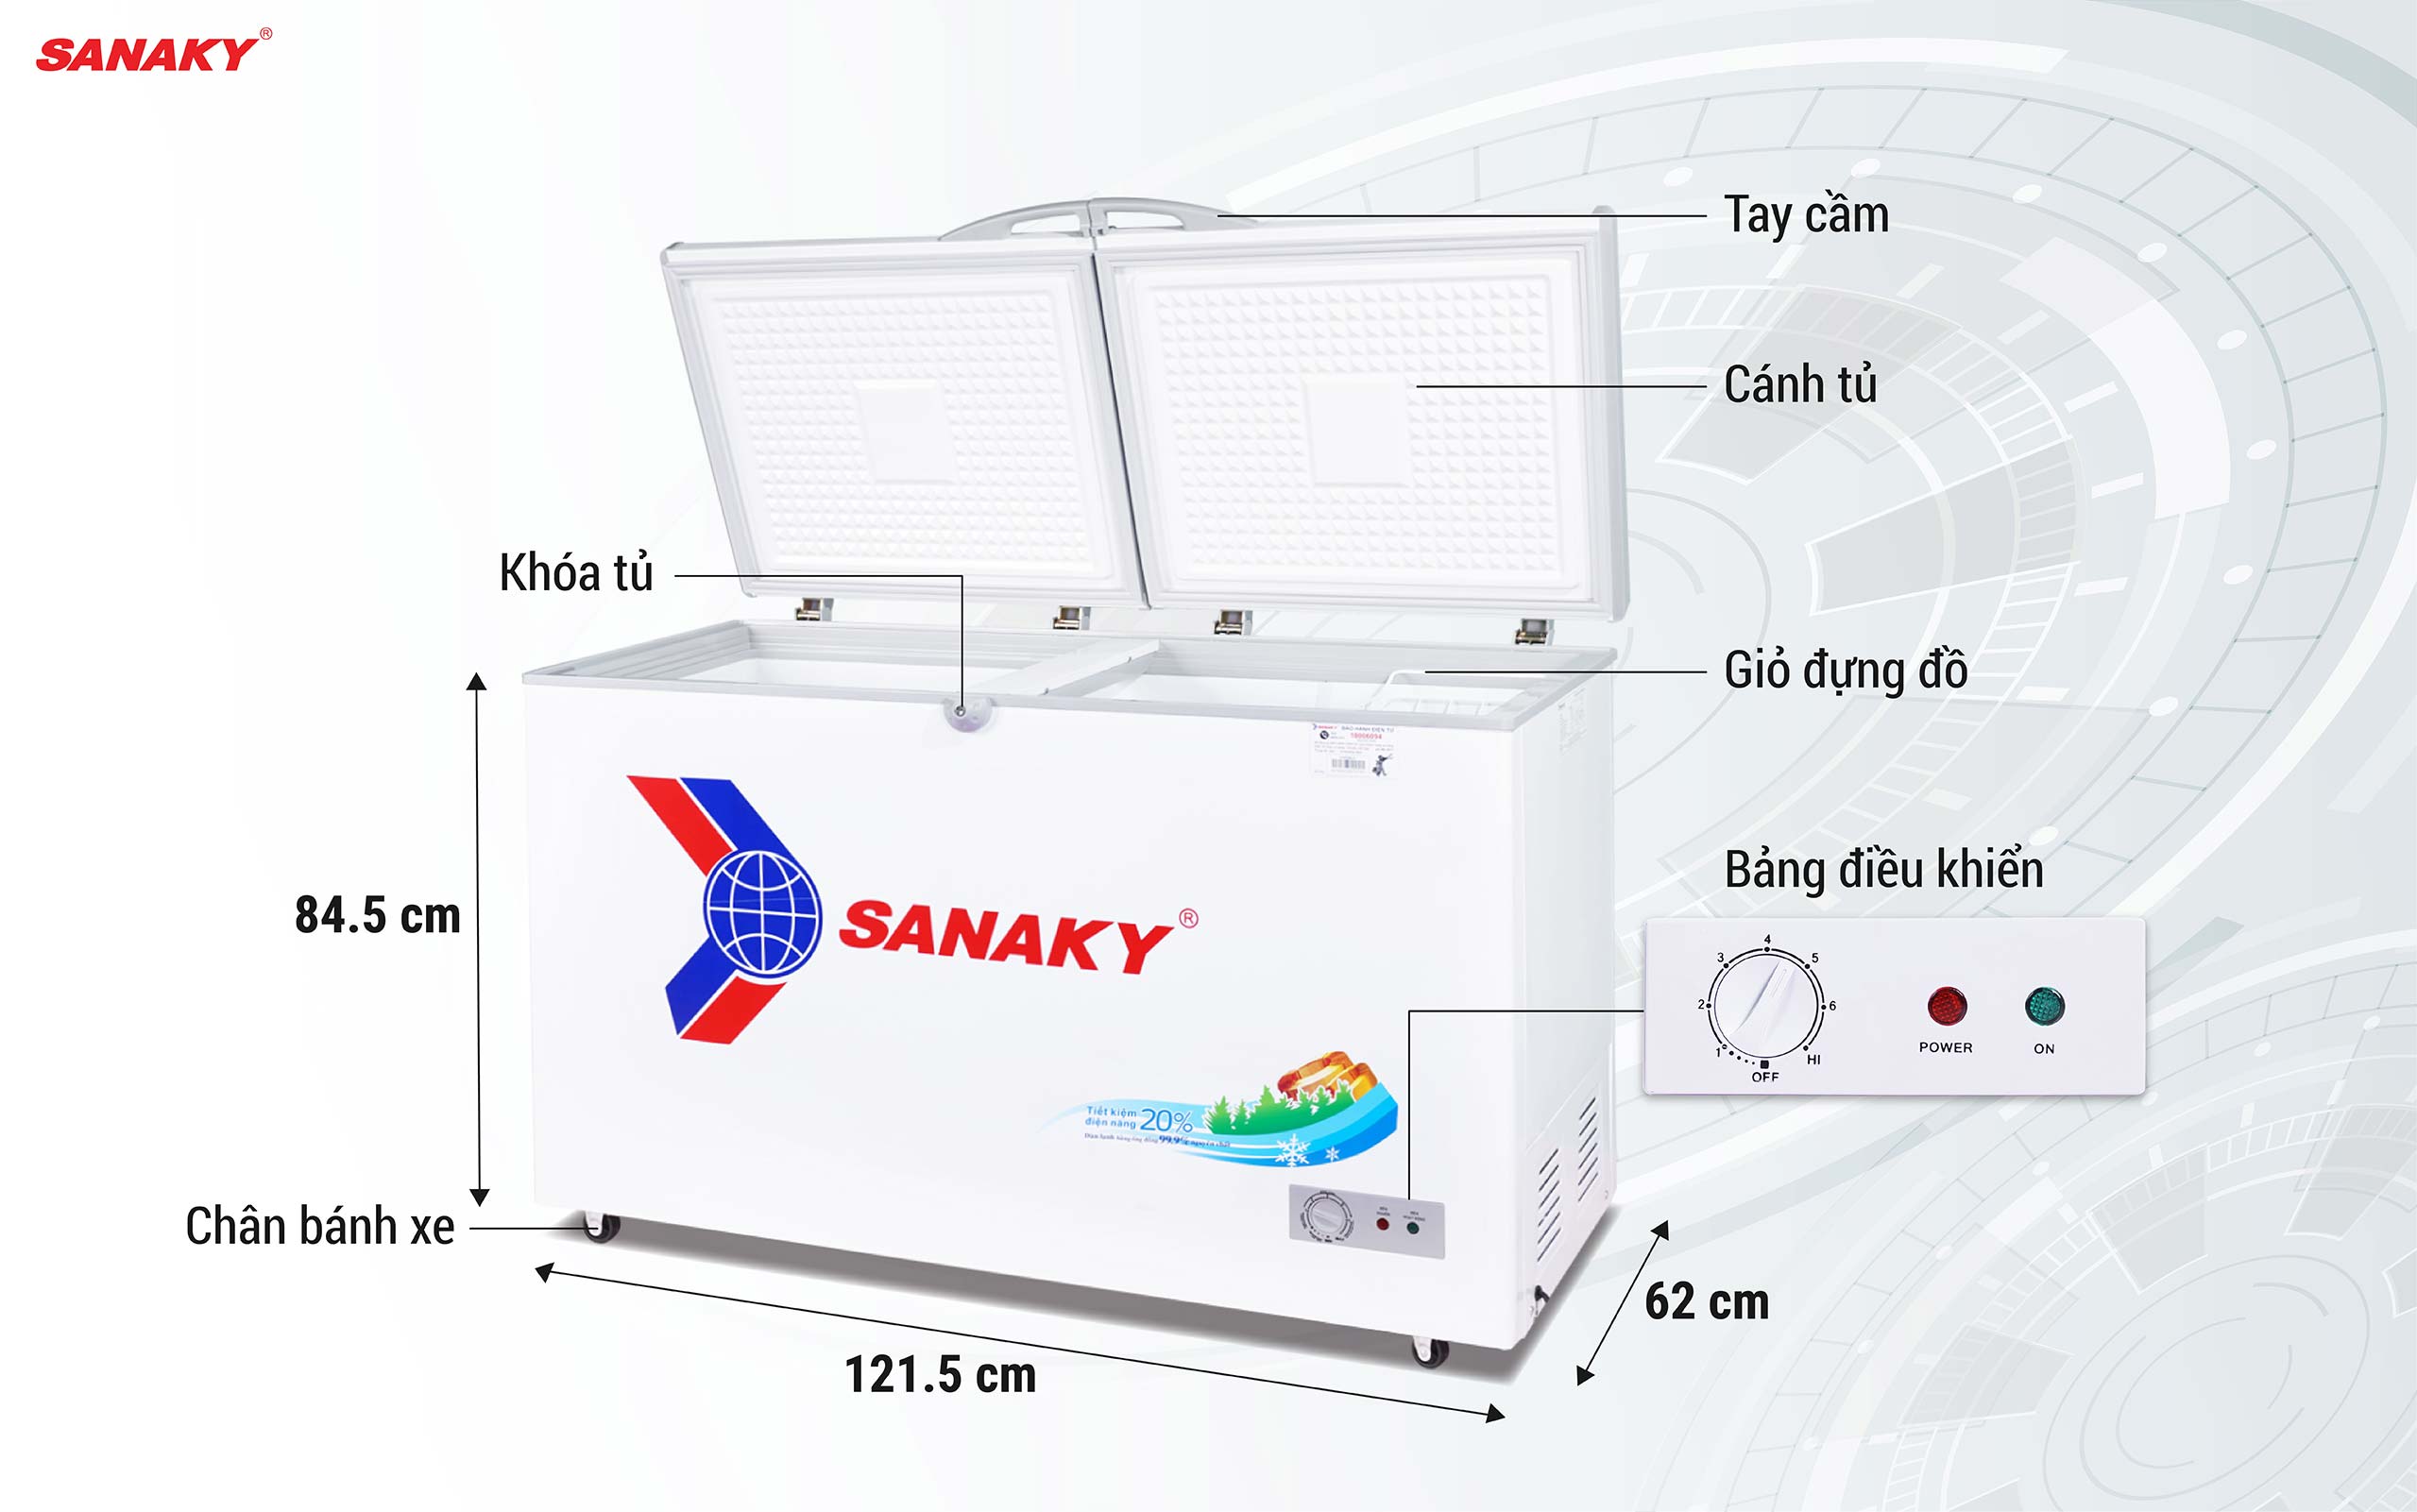 Tủ Đông Sanaky VH-3699A1 270 lít 1 ngăn 2 cánh